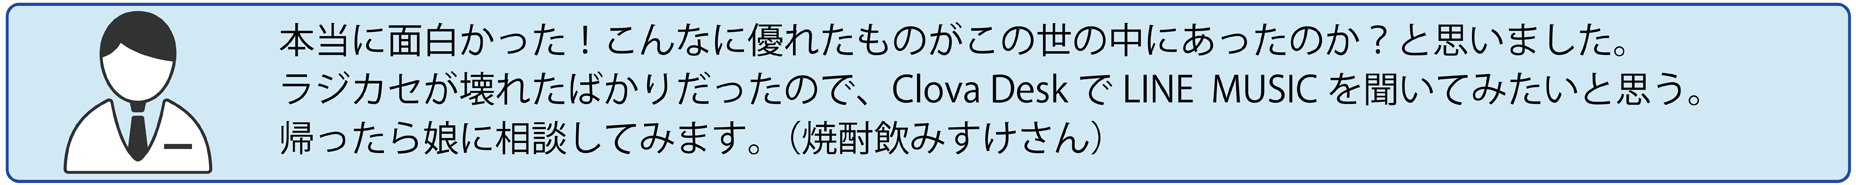 LINE Clova presentswlC jXƊwԁuClova Deskv̌x|[g